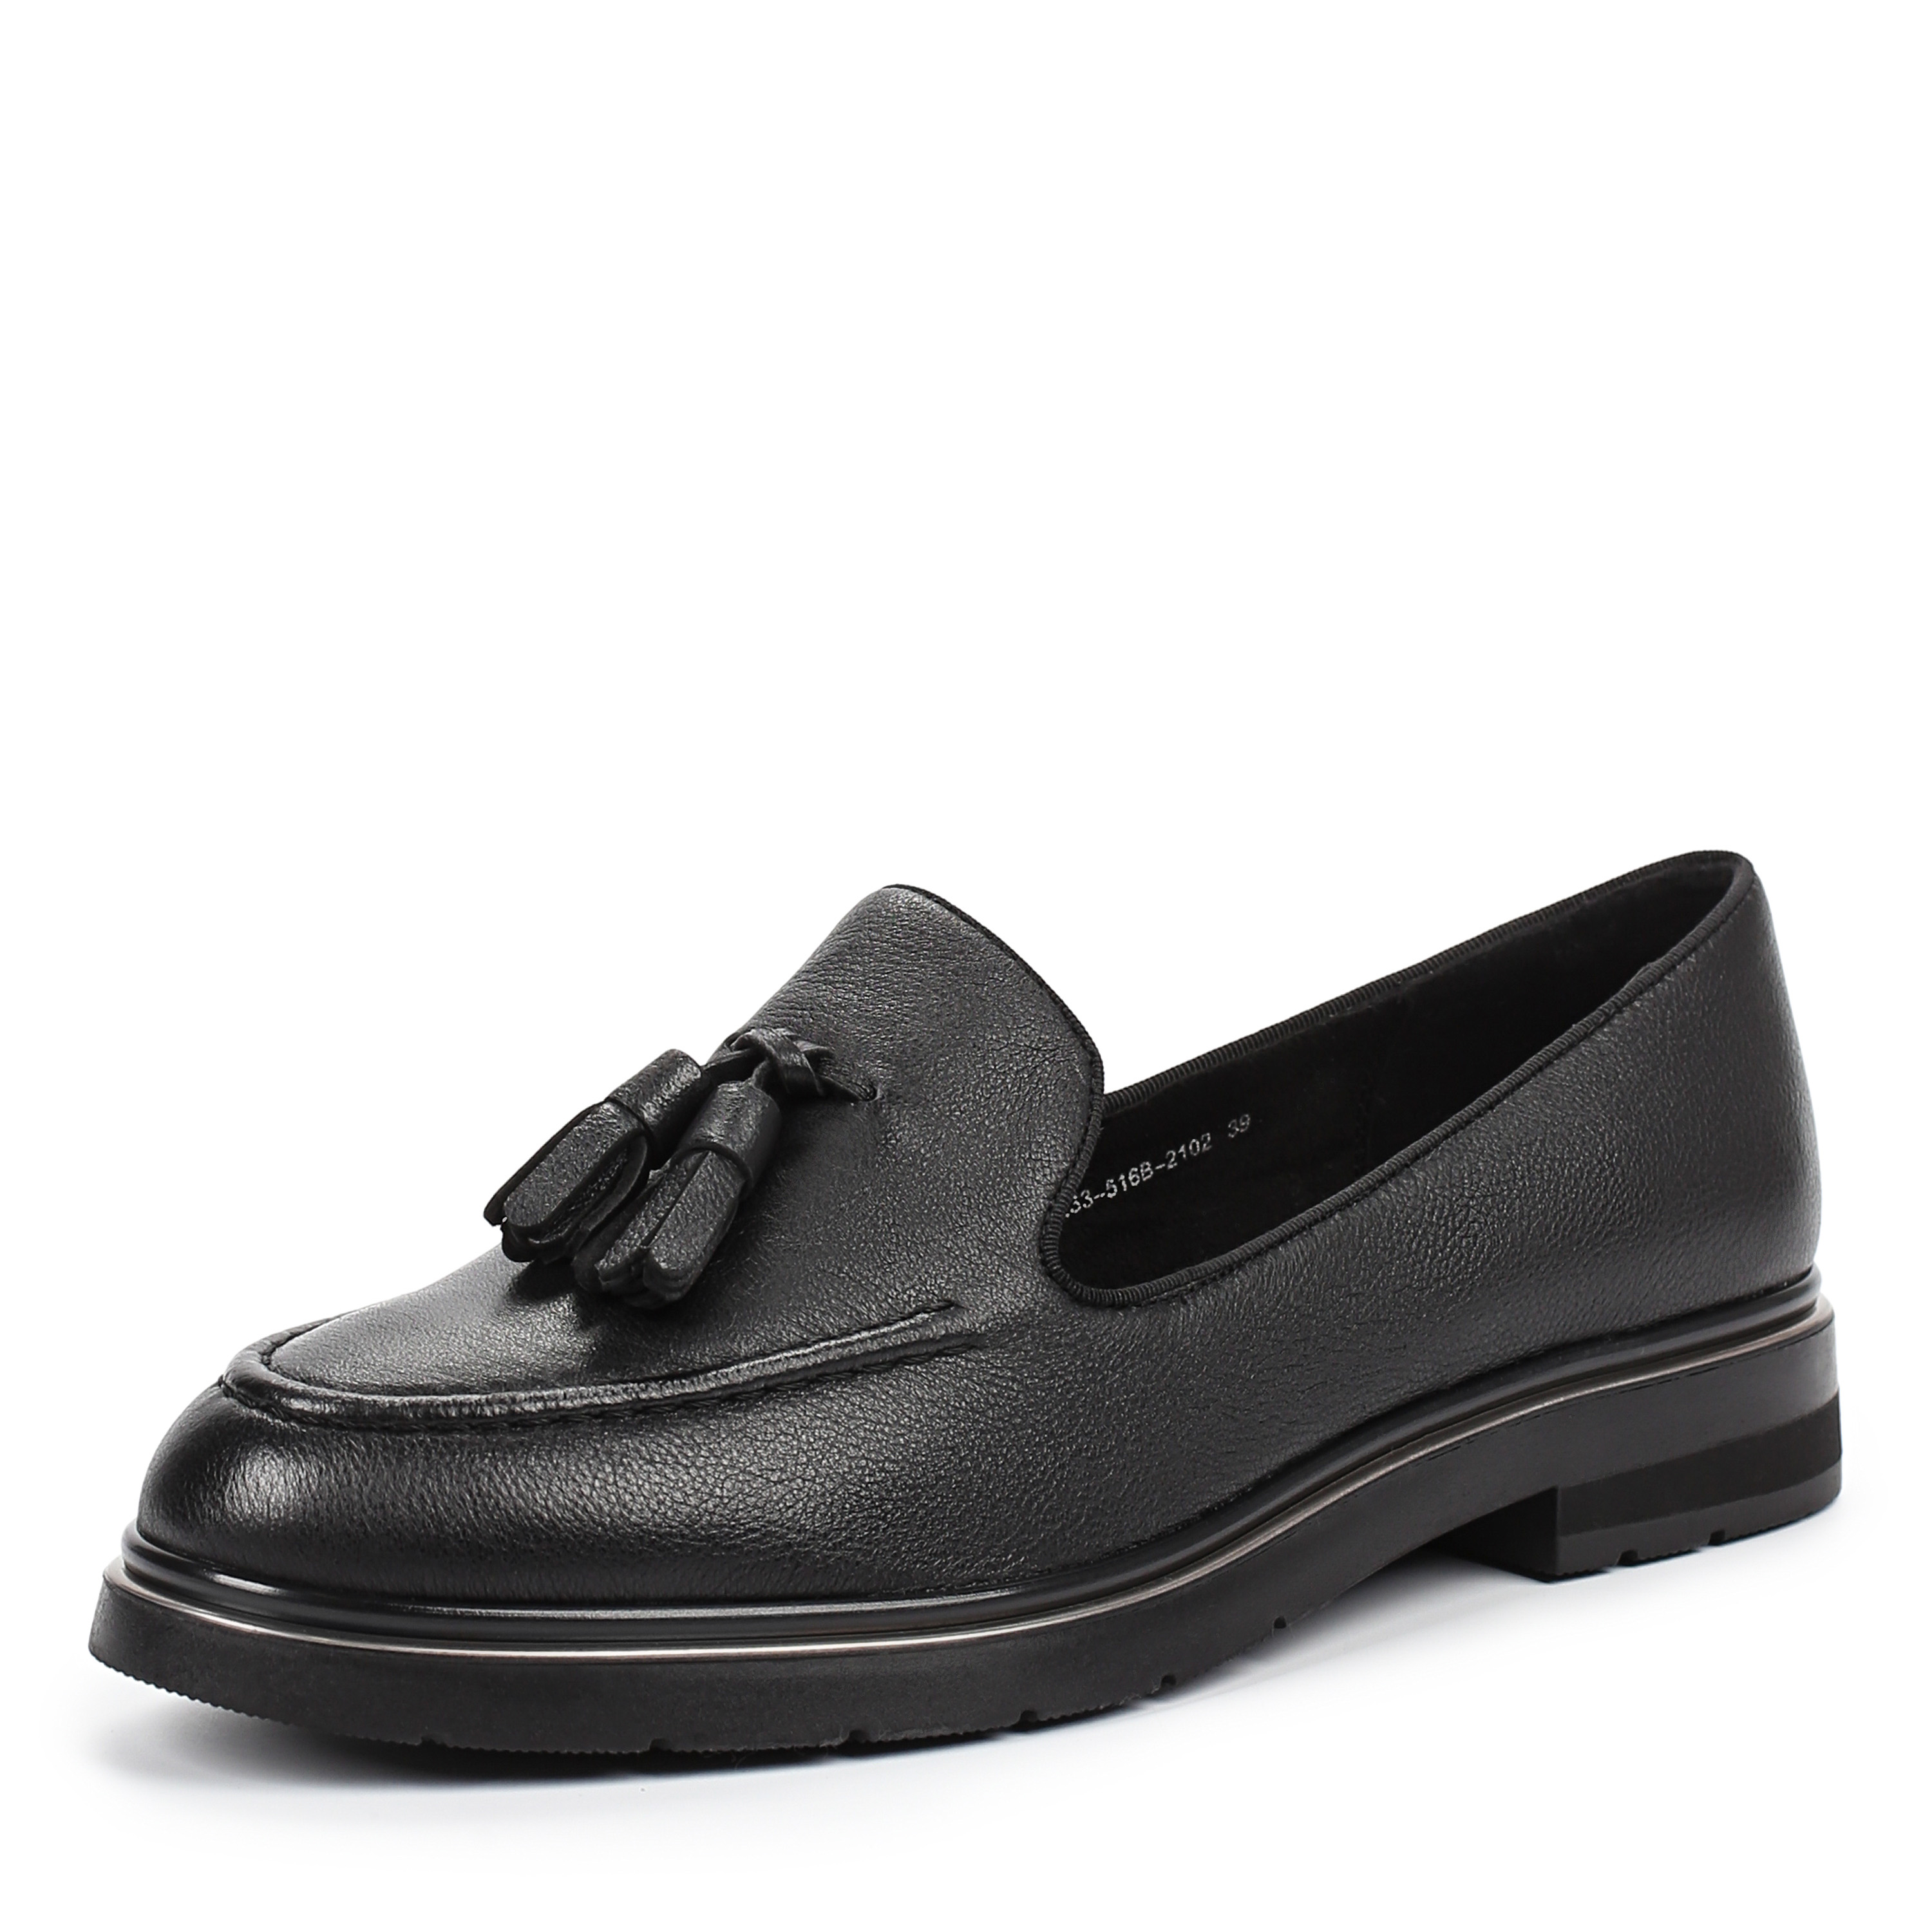 Туфли Thomas Munz 233-516B-2102, цвет черный, размер 39 - фото 2